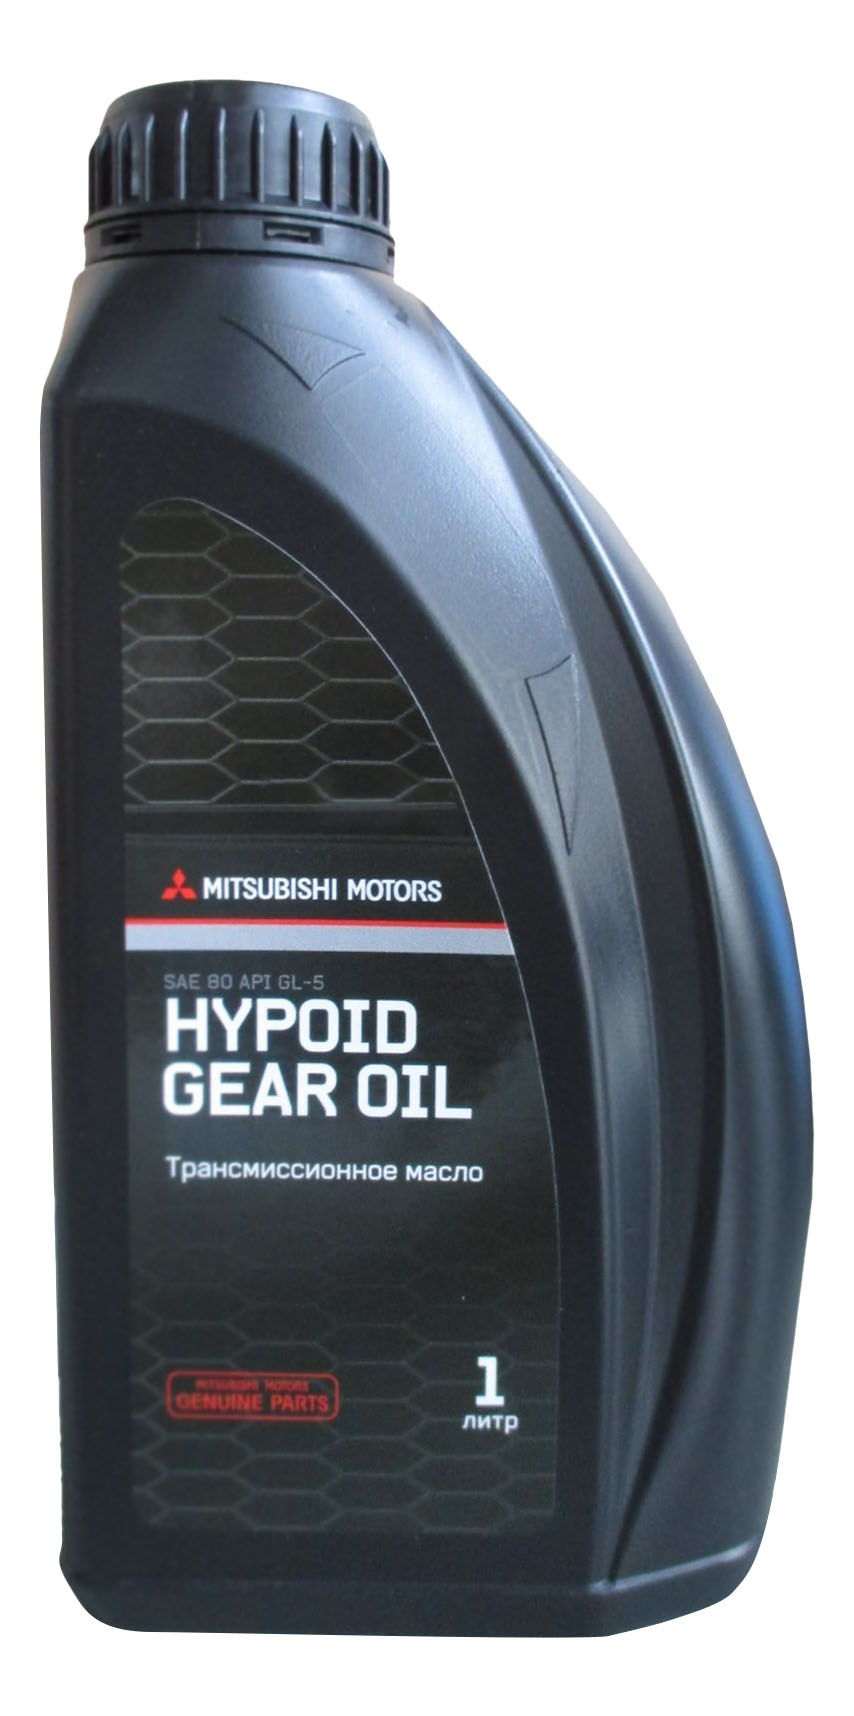 Масло транисмиссионное минеральное Hypoid Gear Oil sae-80 API gl-5 1л - Mitsubishi MZ320282